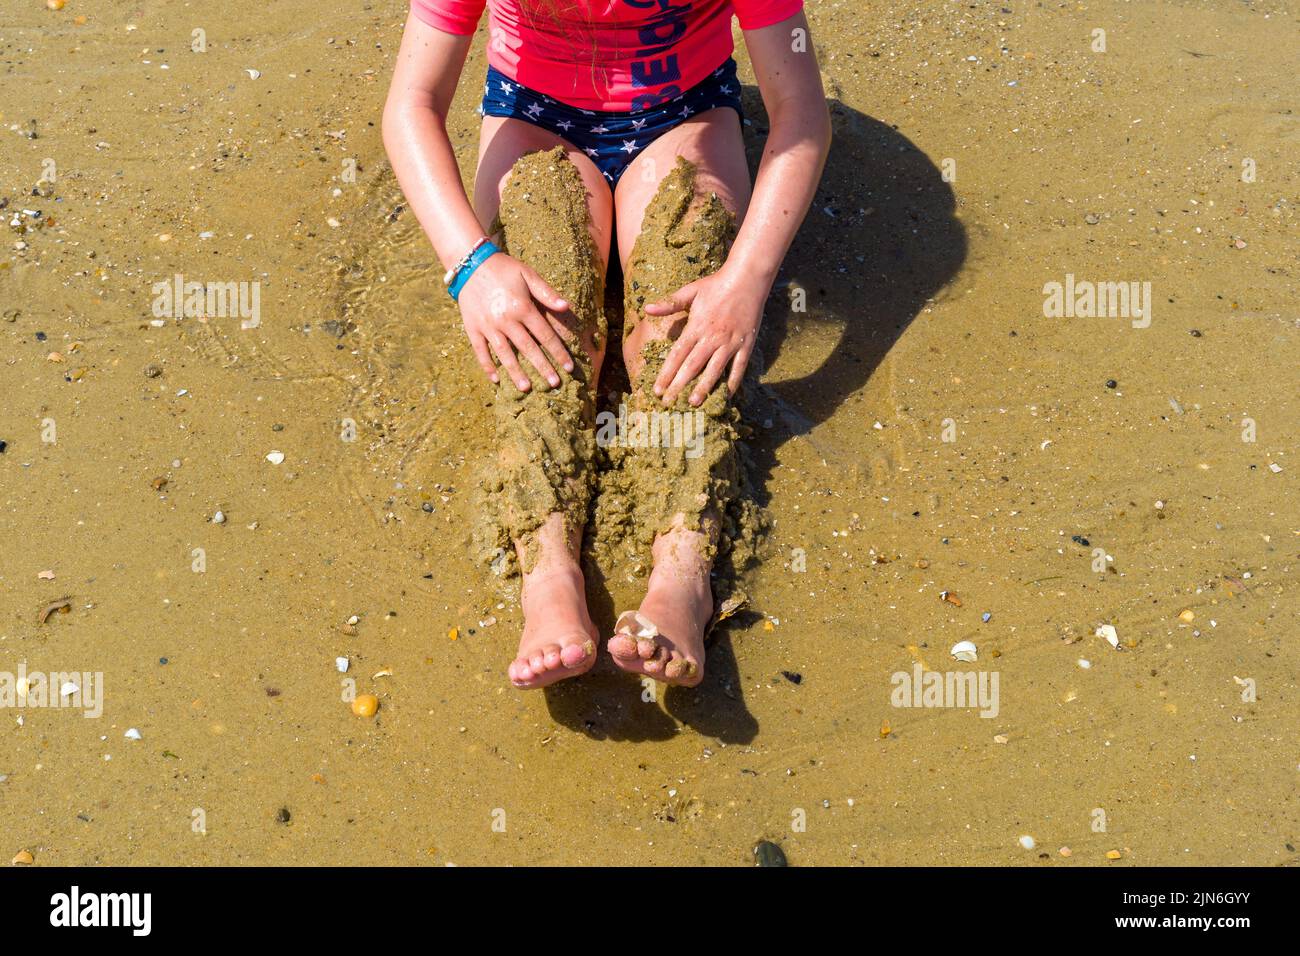 Une jeune fille sur la plage, jouant avec le sable sur ses jambes. La plage d'Arcachon, le quai Belisaire, les embarquements, les amoureux, les baigneurs, une journée à la plage. 04 août 2022. Photo de Patricia Huchot-Boissier/ABACAPRESS.COM Banque D'Images